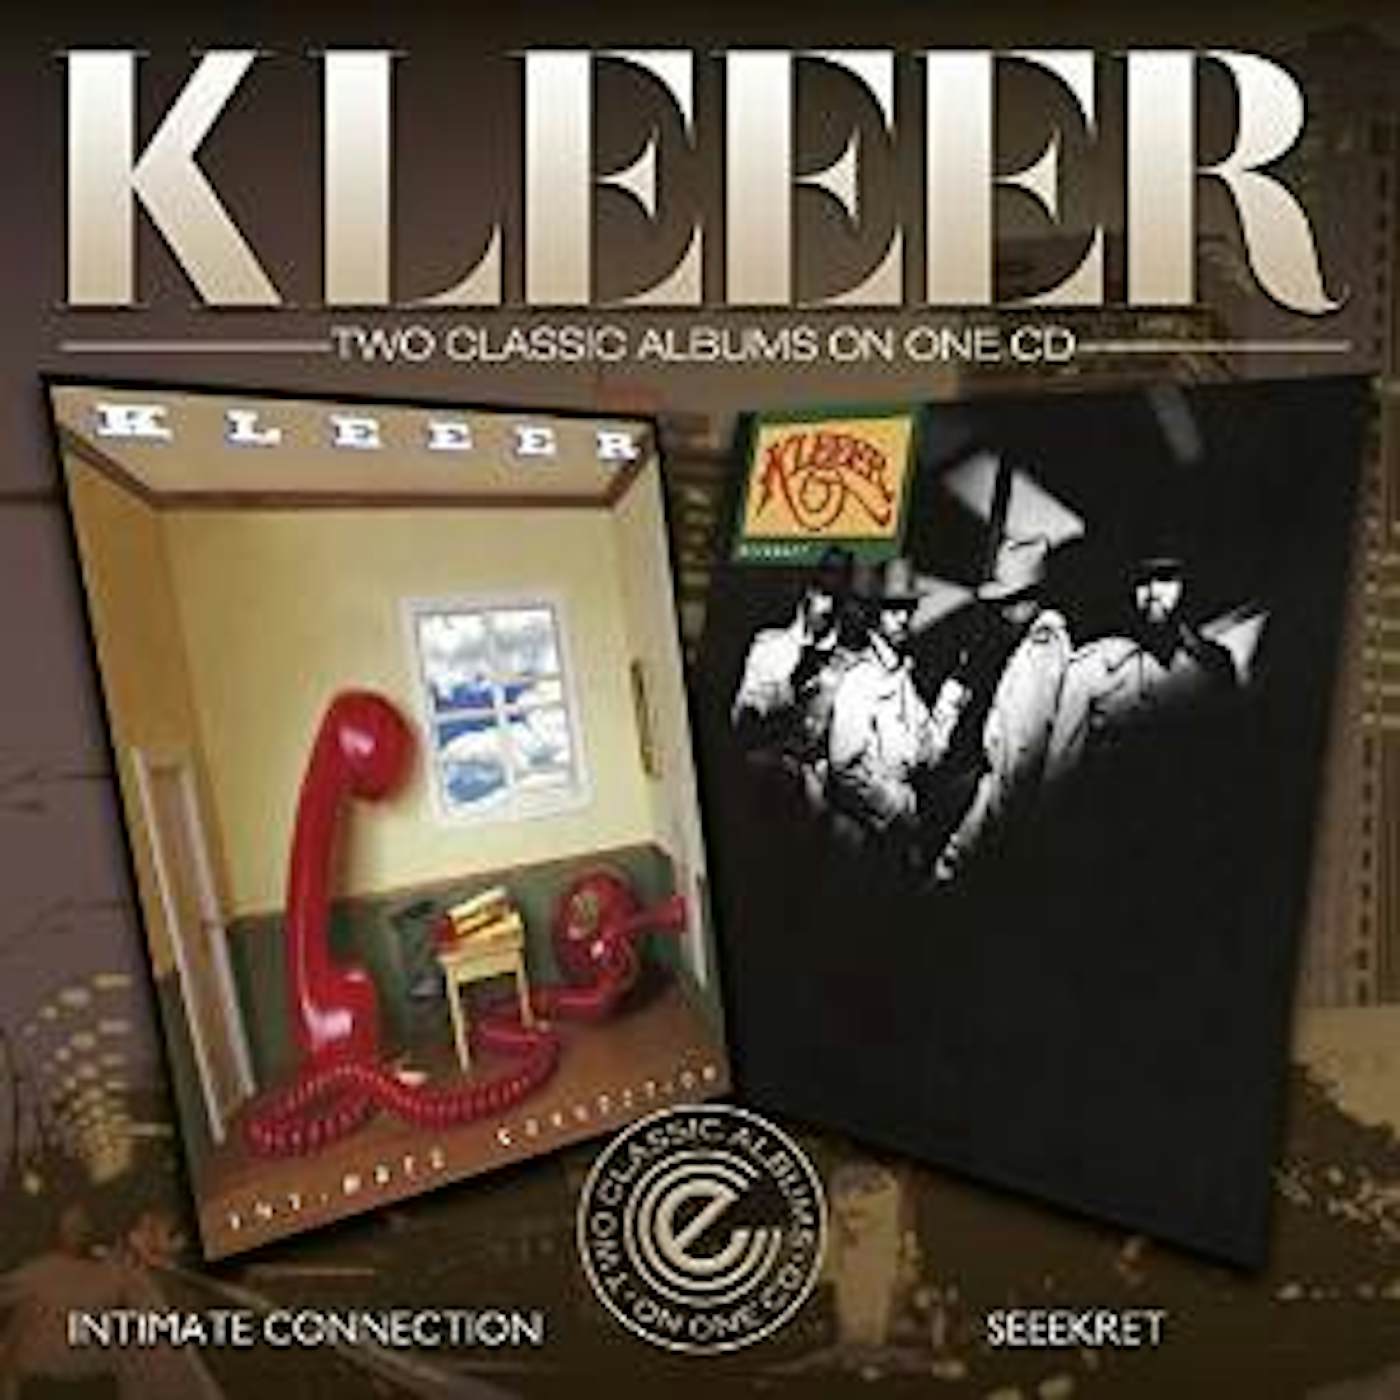 Kleeer INTIMATE CONNECTION / SEEEKRET CD